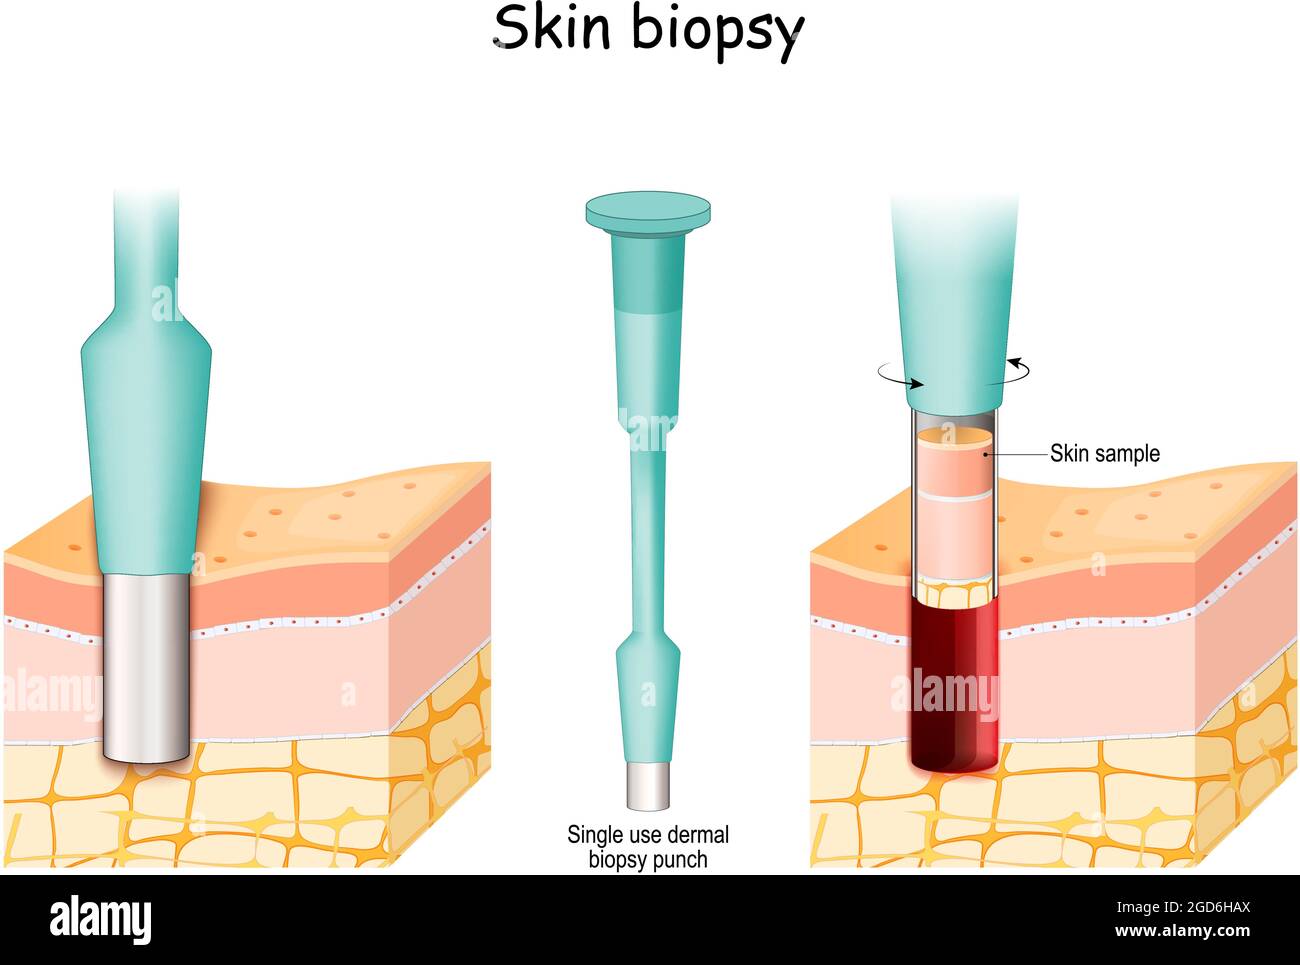 Hautbiopsie. Punch Biopsie Nehmen Sie die Hautprobe. Haut vor und nach dem medizinischen Eingriff. Nahaufnahme des einmal-dermalen Biopsieboxes. Krebsbehandlung. Stock Vektor